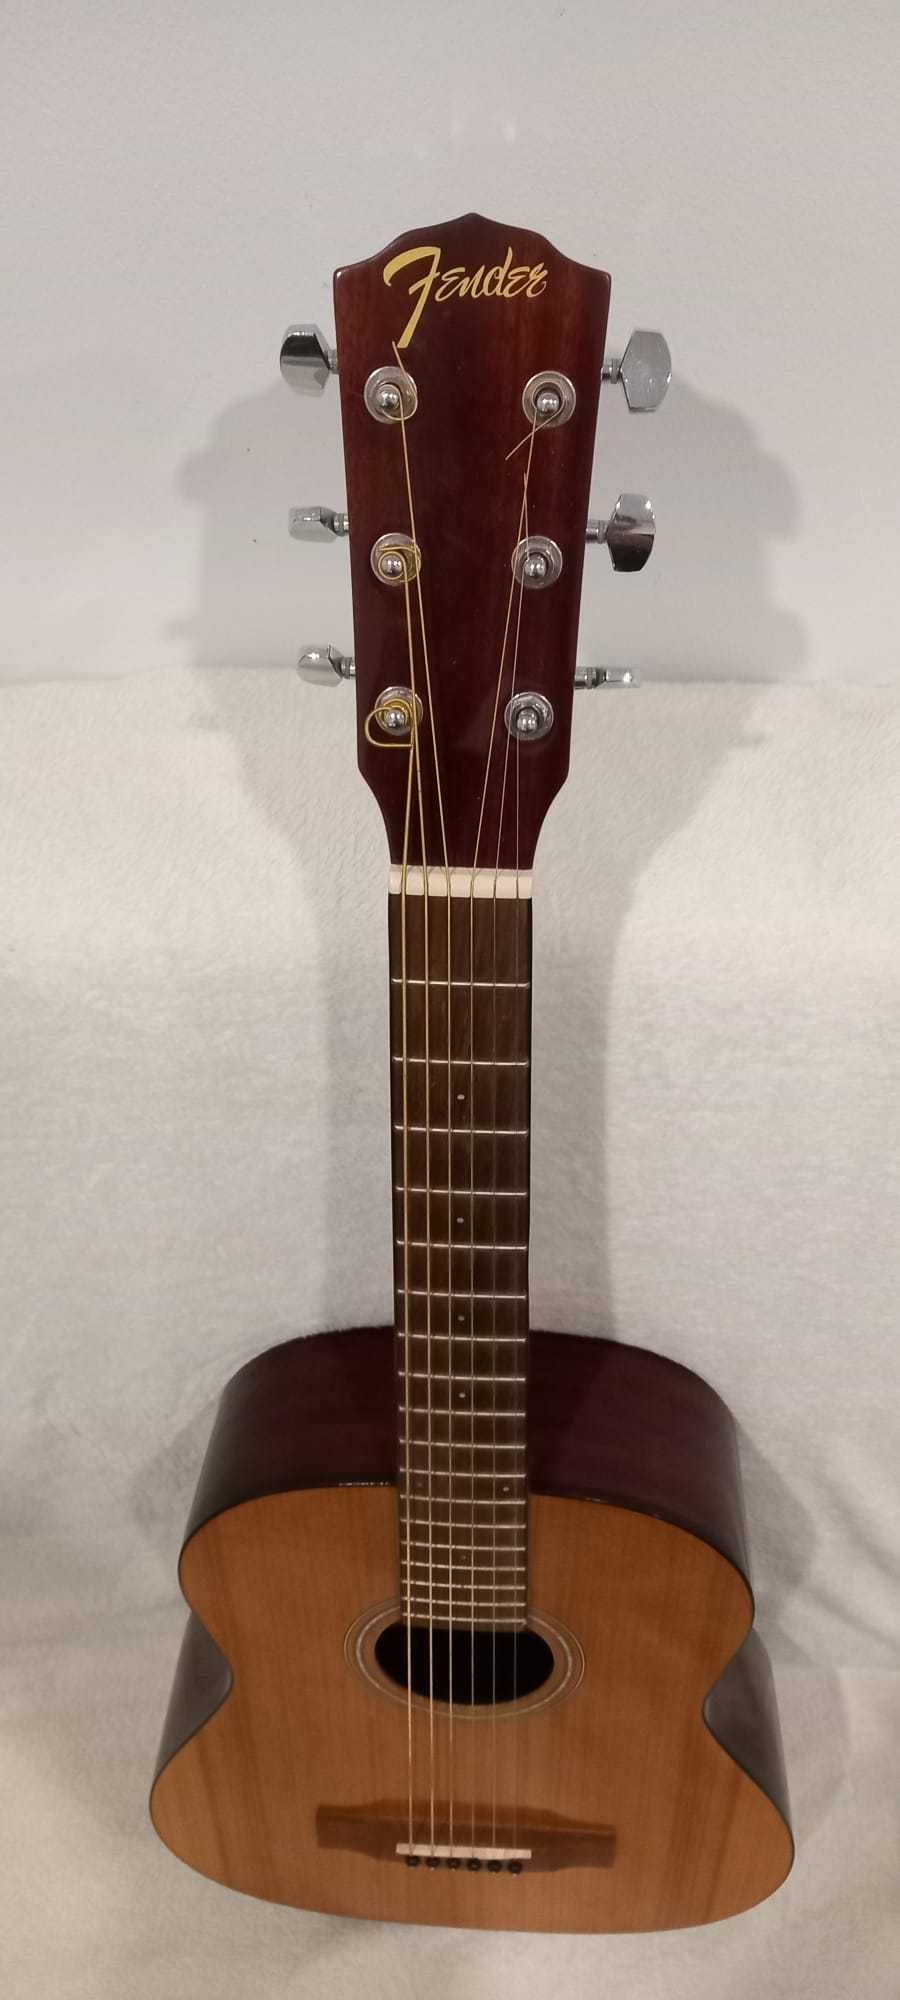 Guitarra acústica / Violão, marca FENDER FA-15